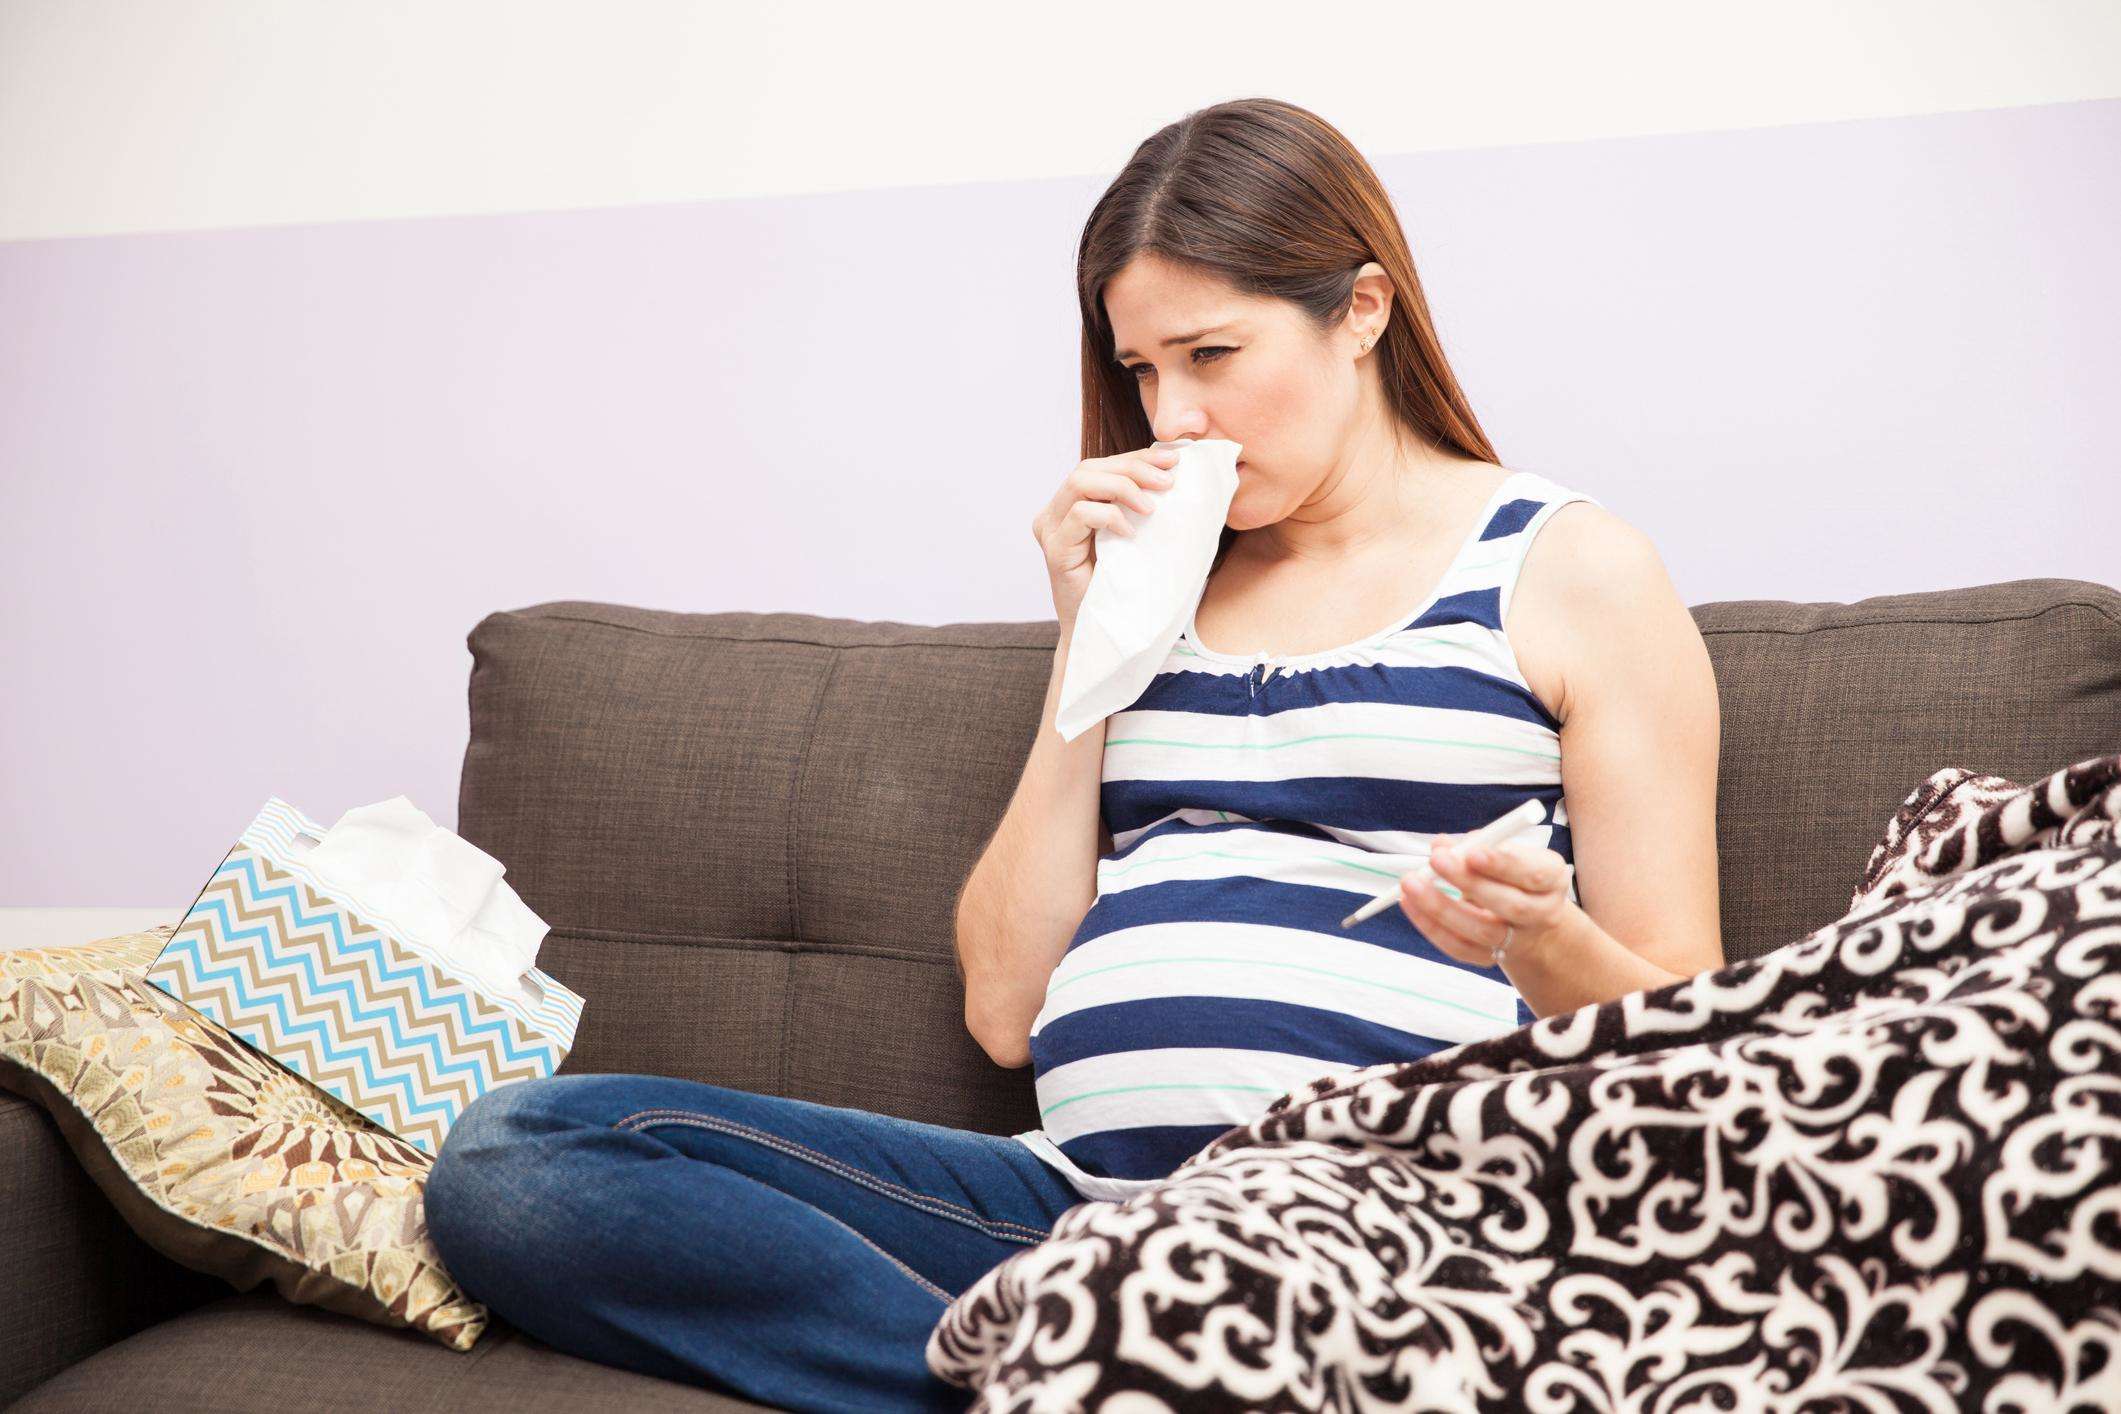 गर्भावस्था के दौरान हुआ कोल्ड बन सकता है बच्चे के लिए अस्थमे का कारण